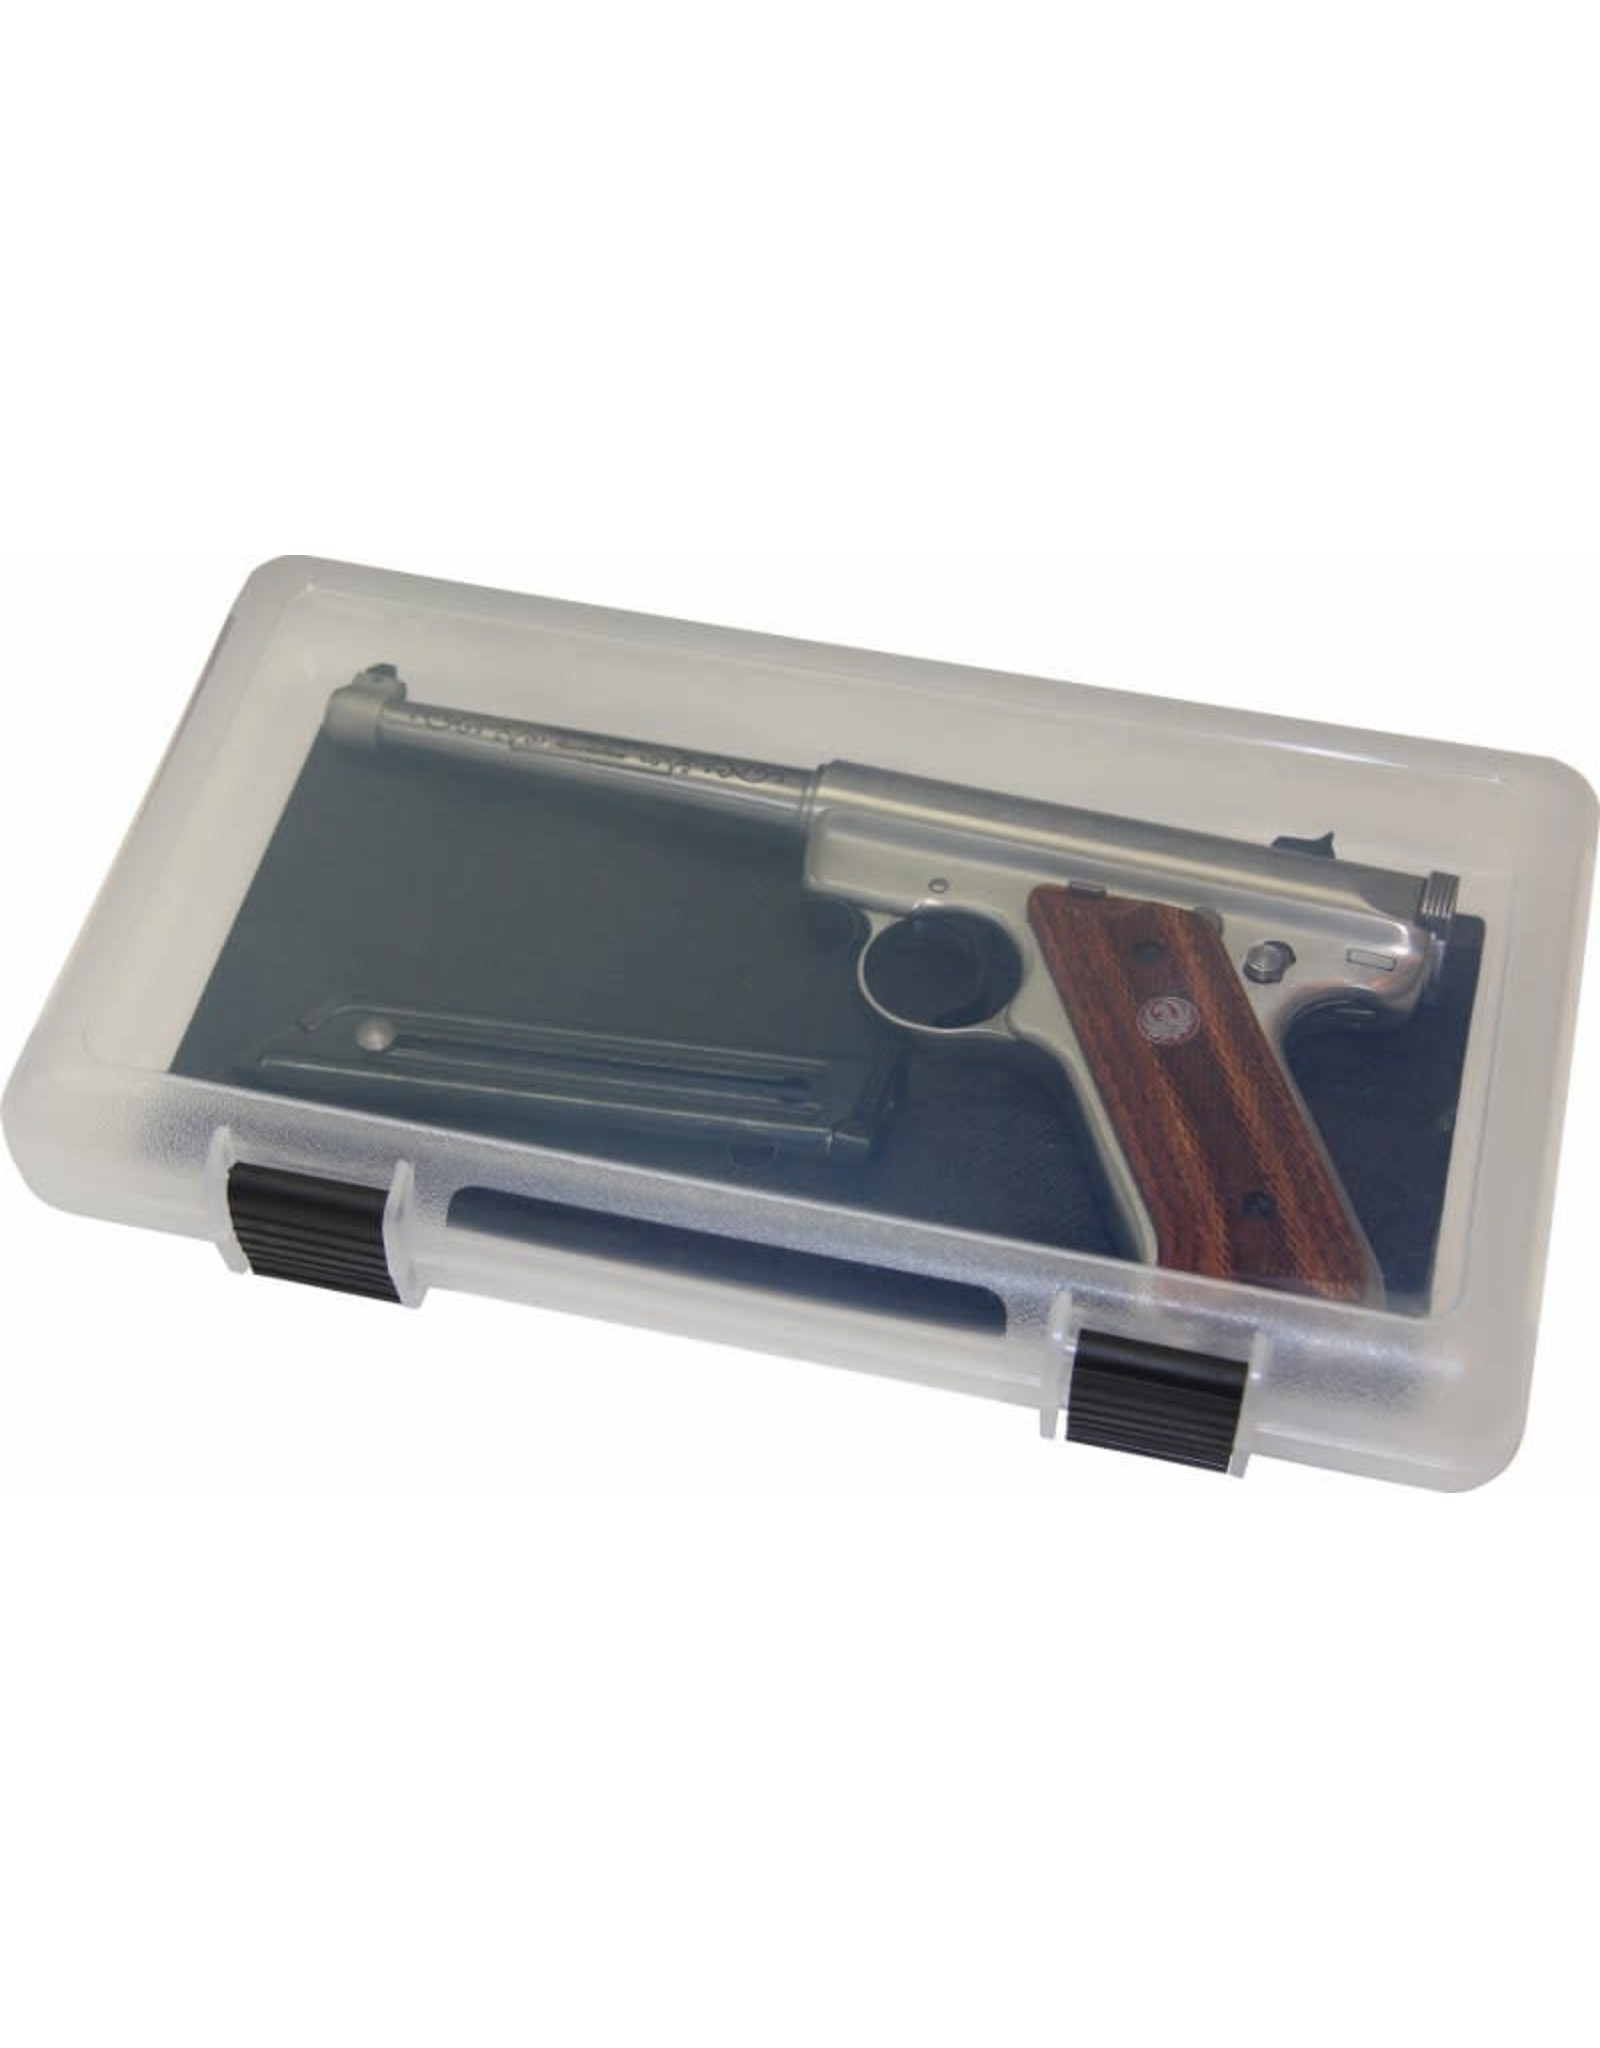 MTM MTM ISC12 In Safe Handgun Storage - LG - 3 Pack